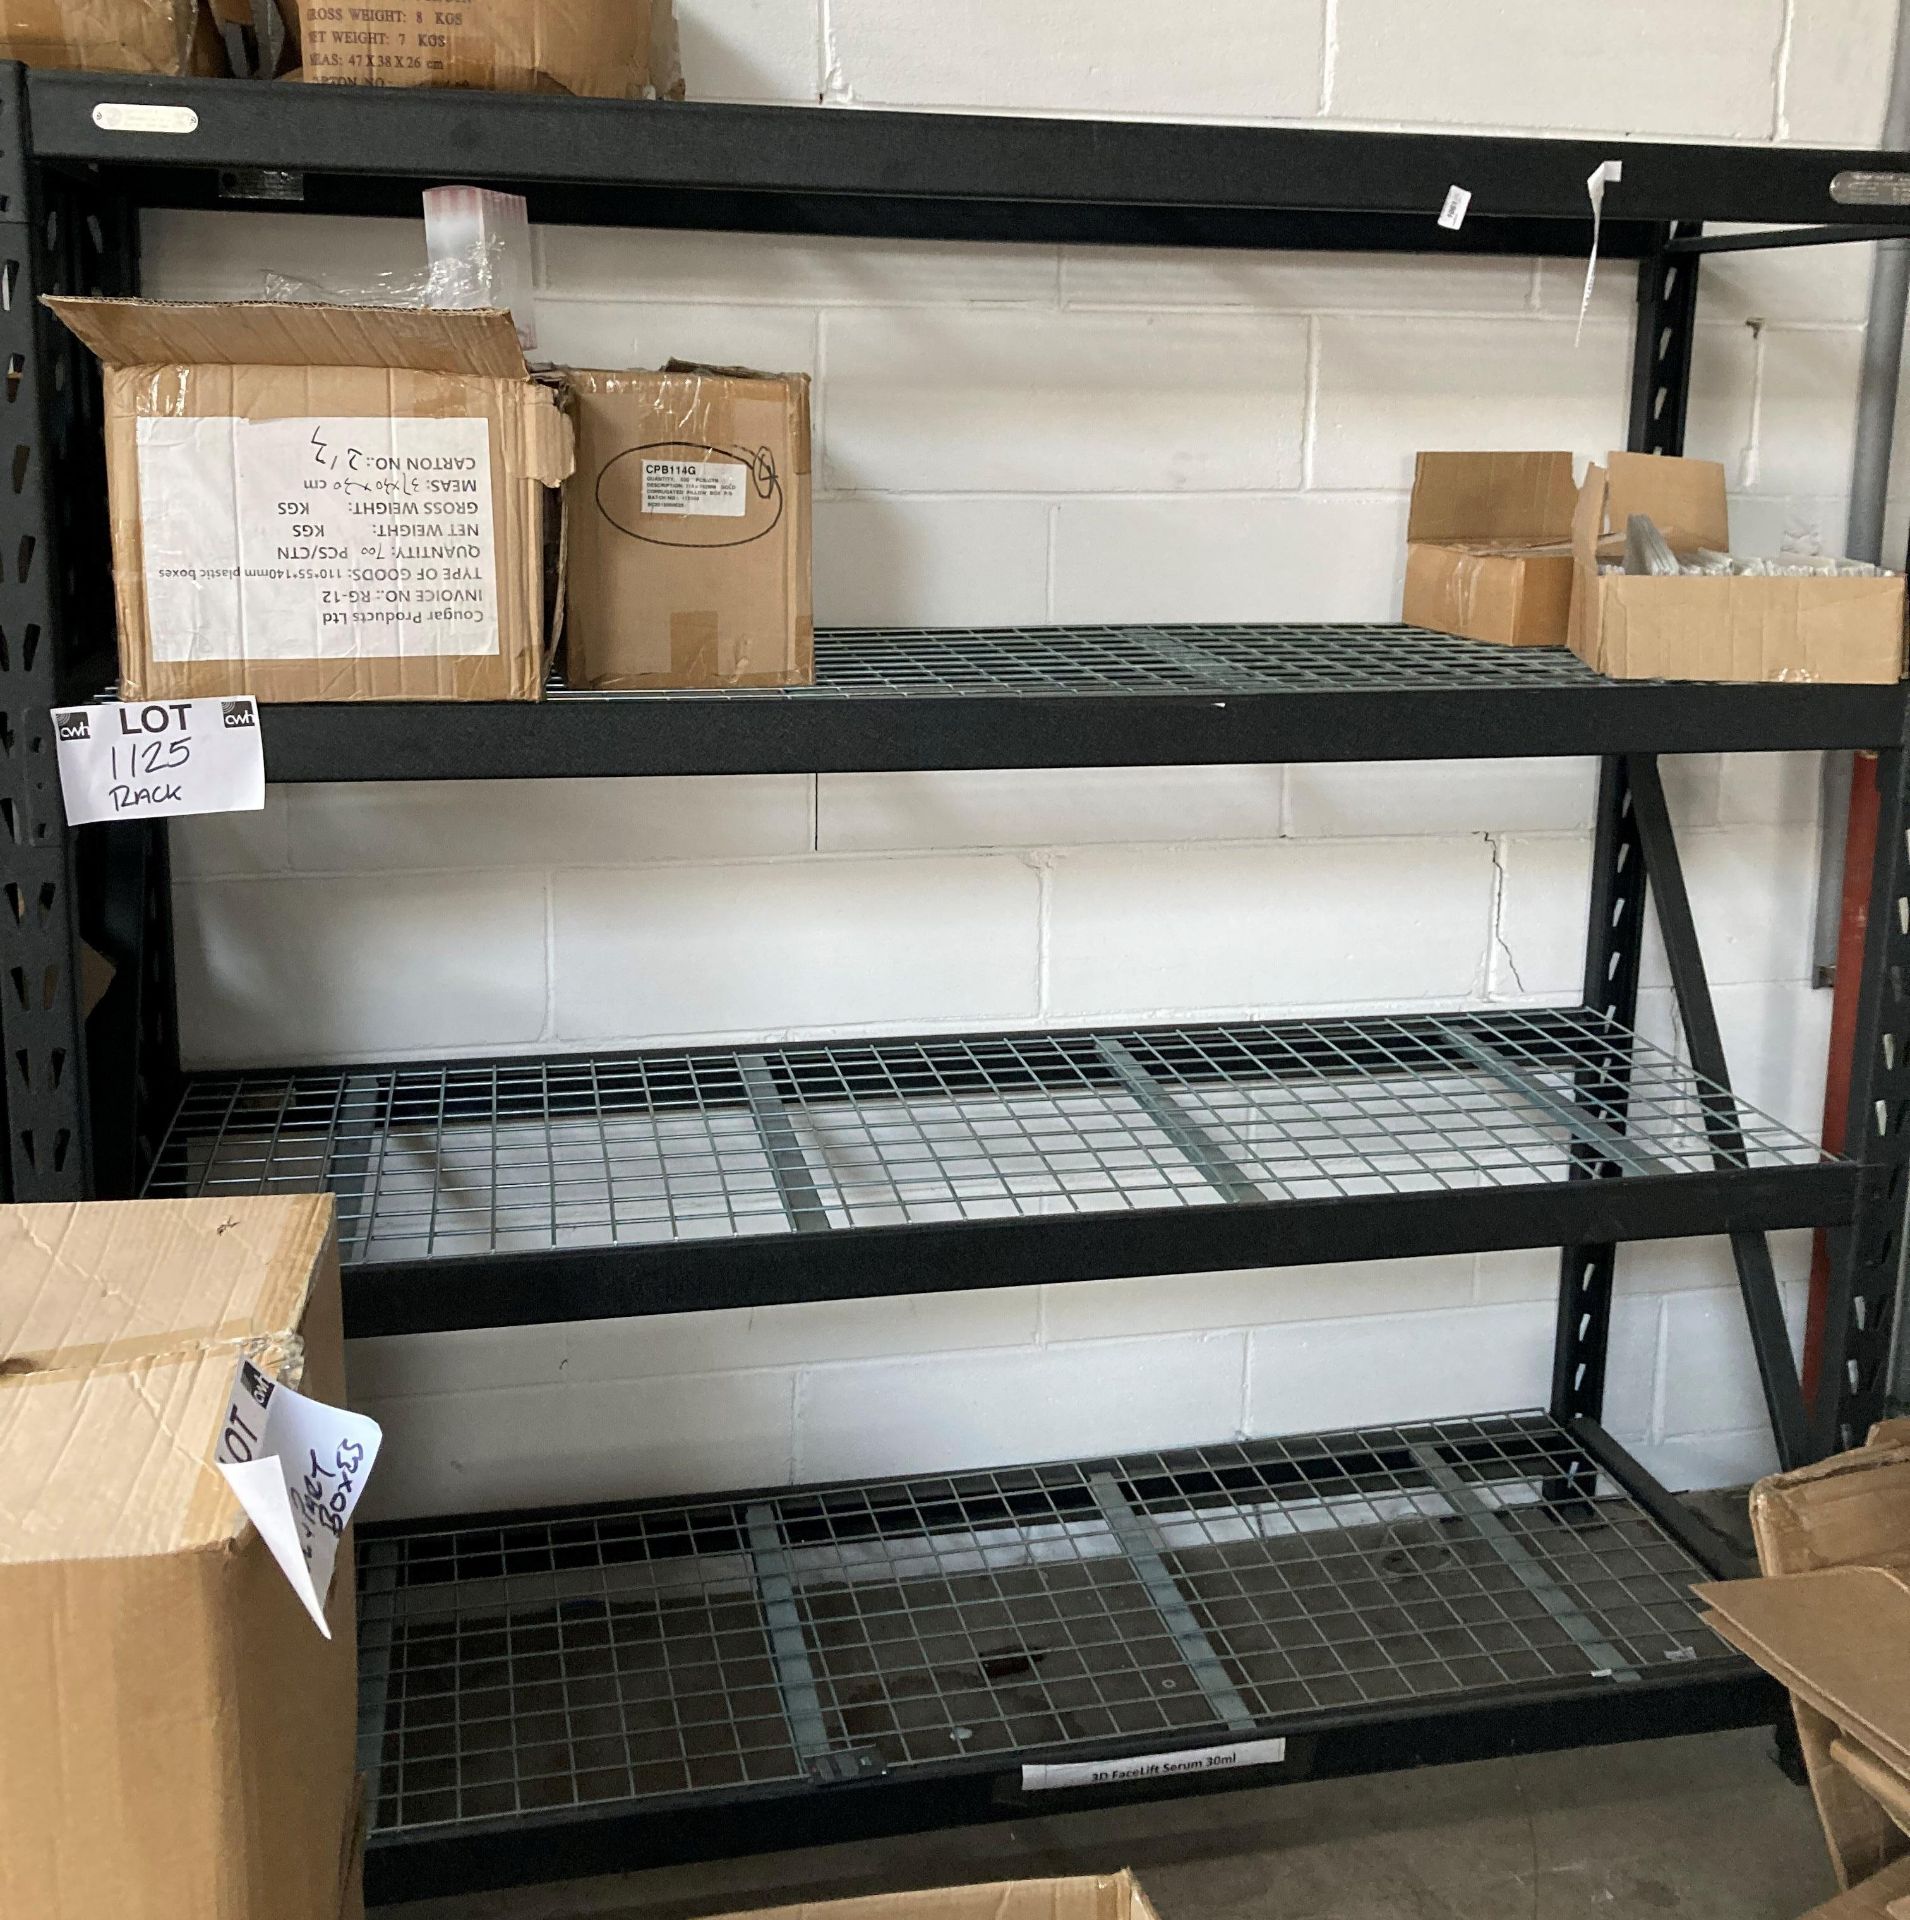 1 x Four shelf metal rack by Whalen Storage - 196 x 182 x 61